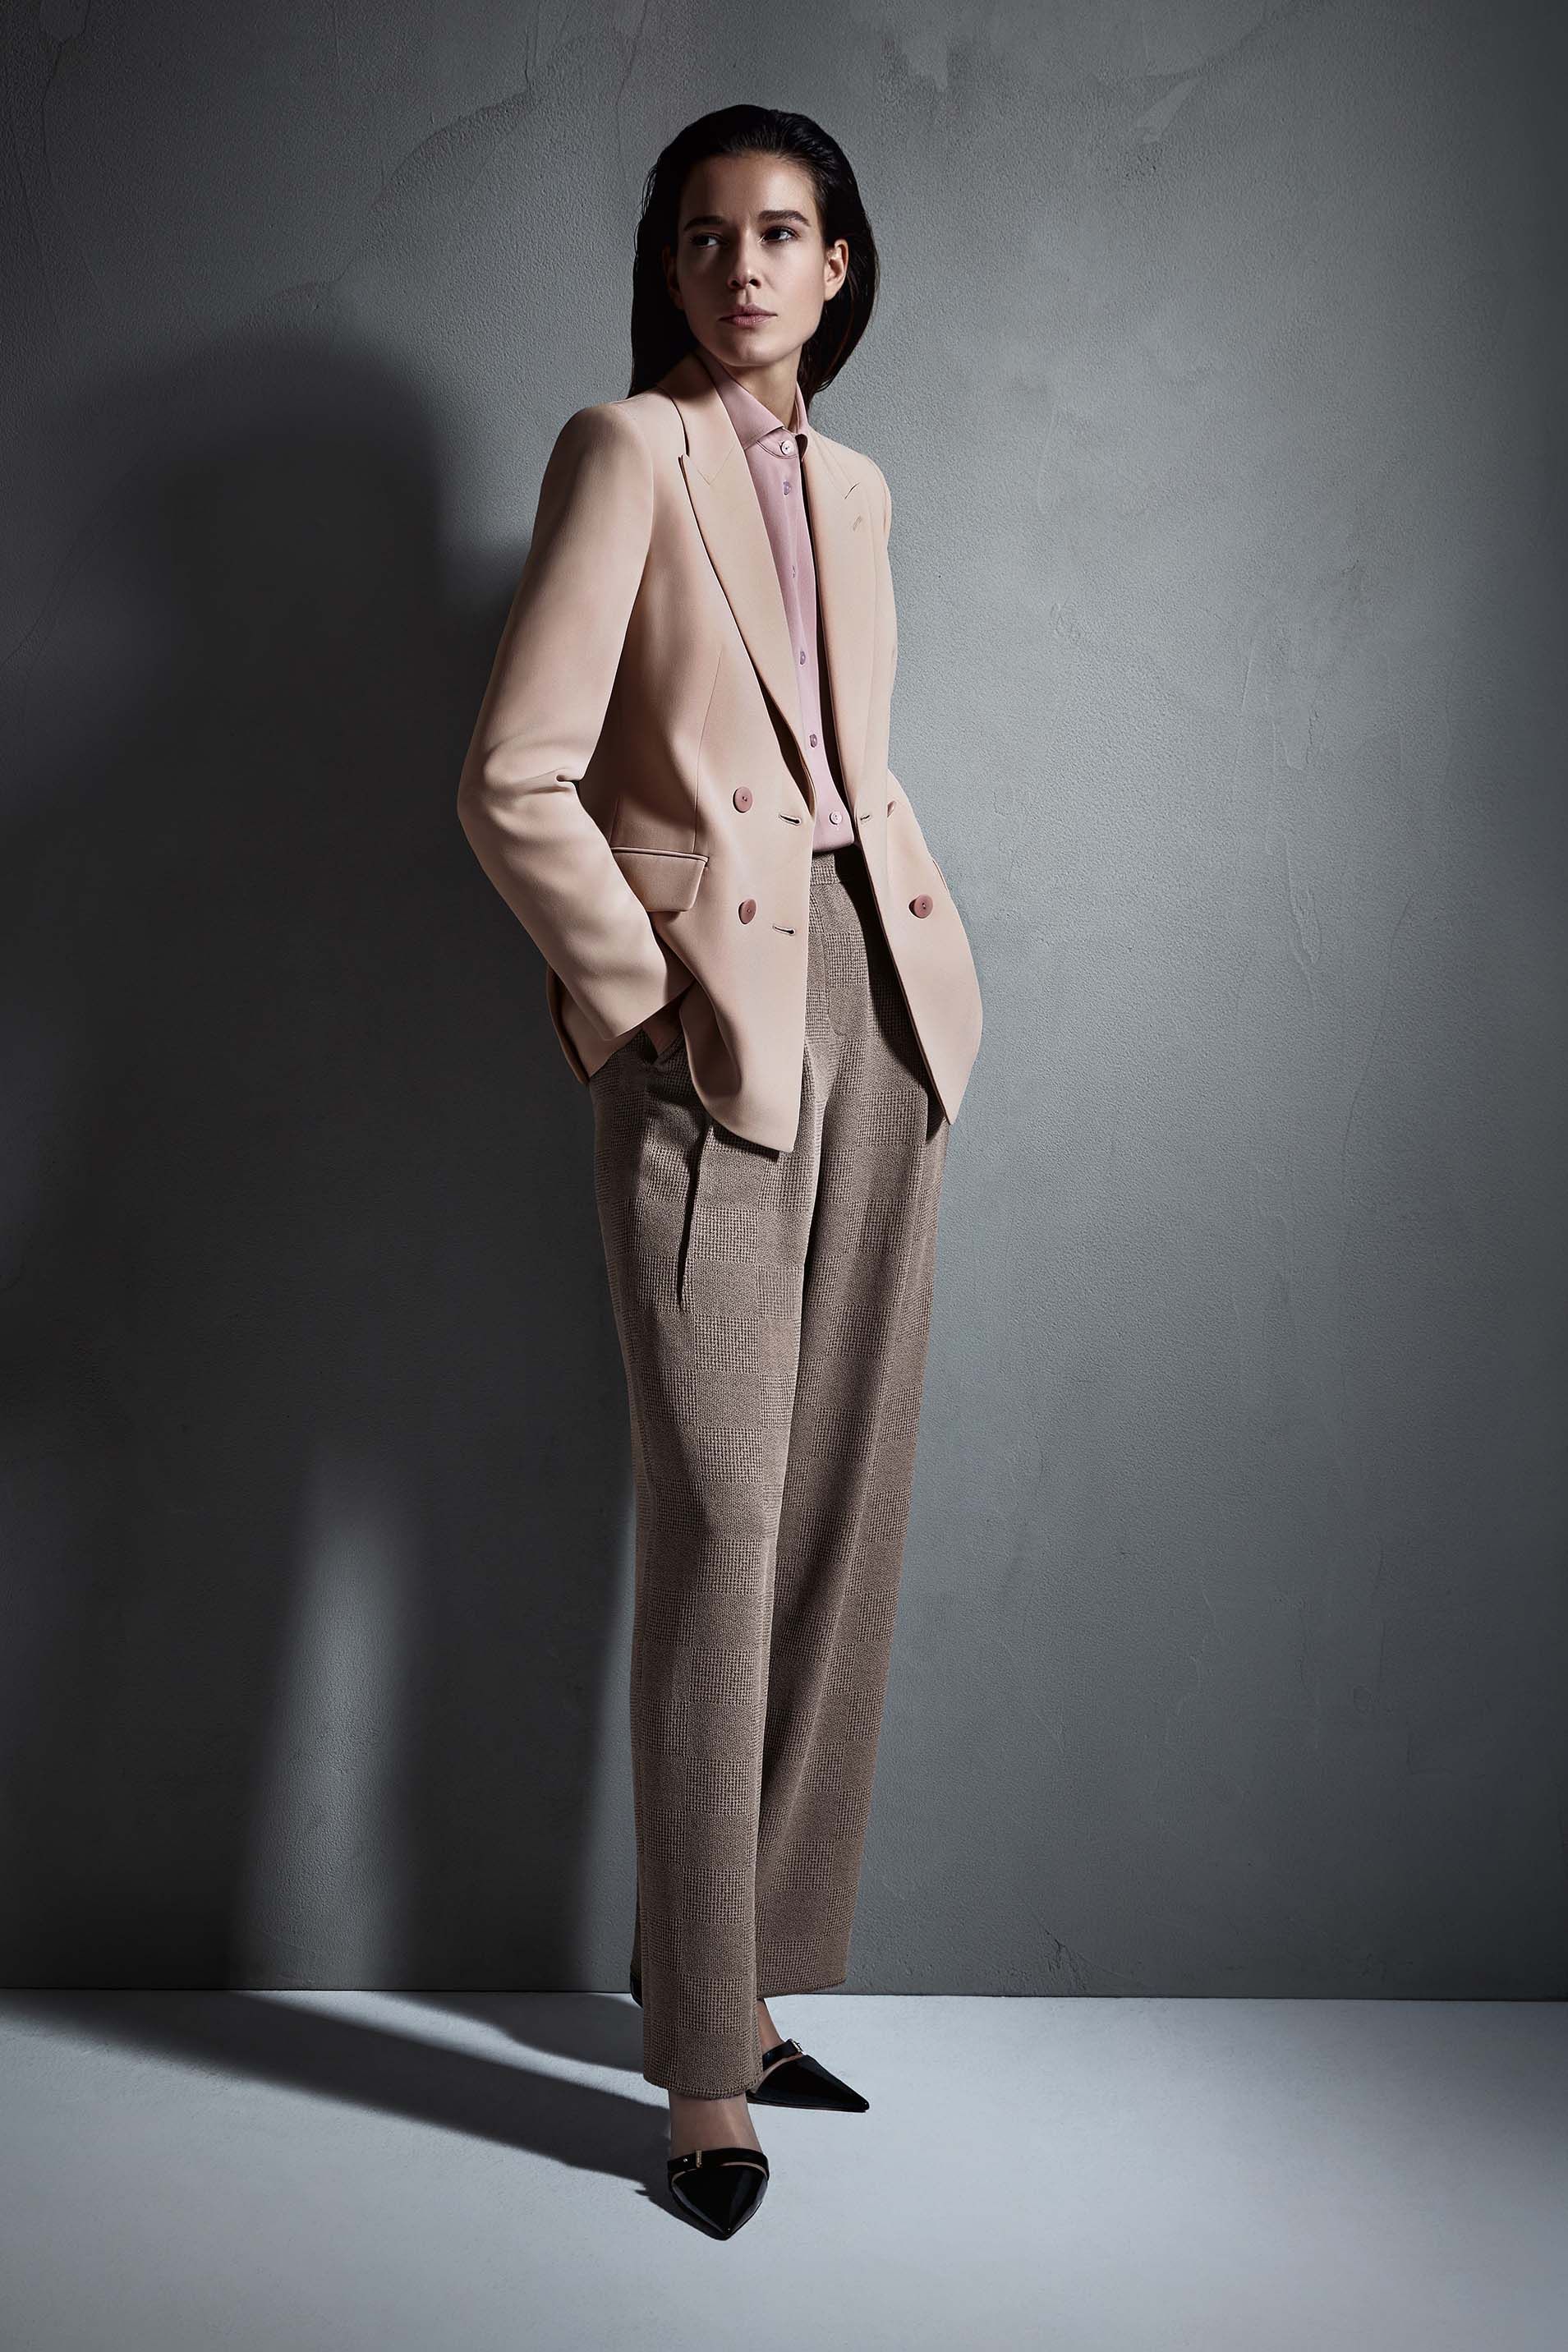 Giorgio Armani launches made-to-order service for womenswear